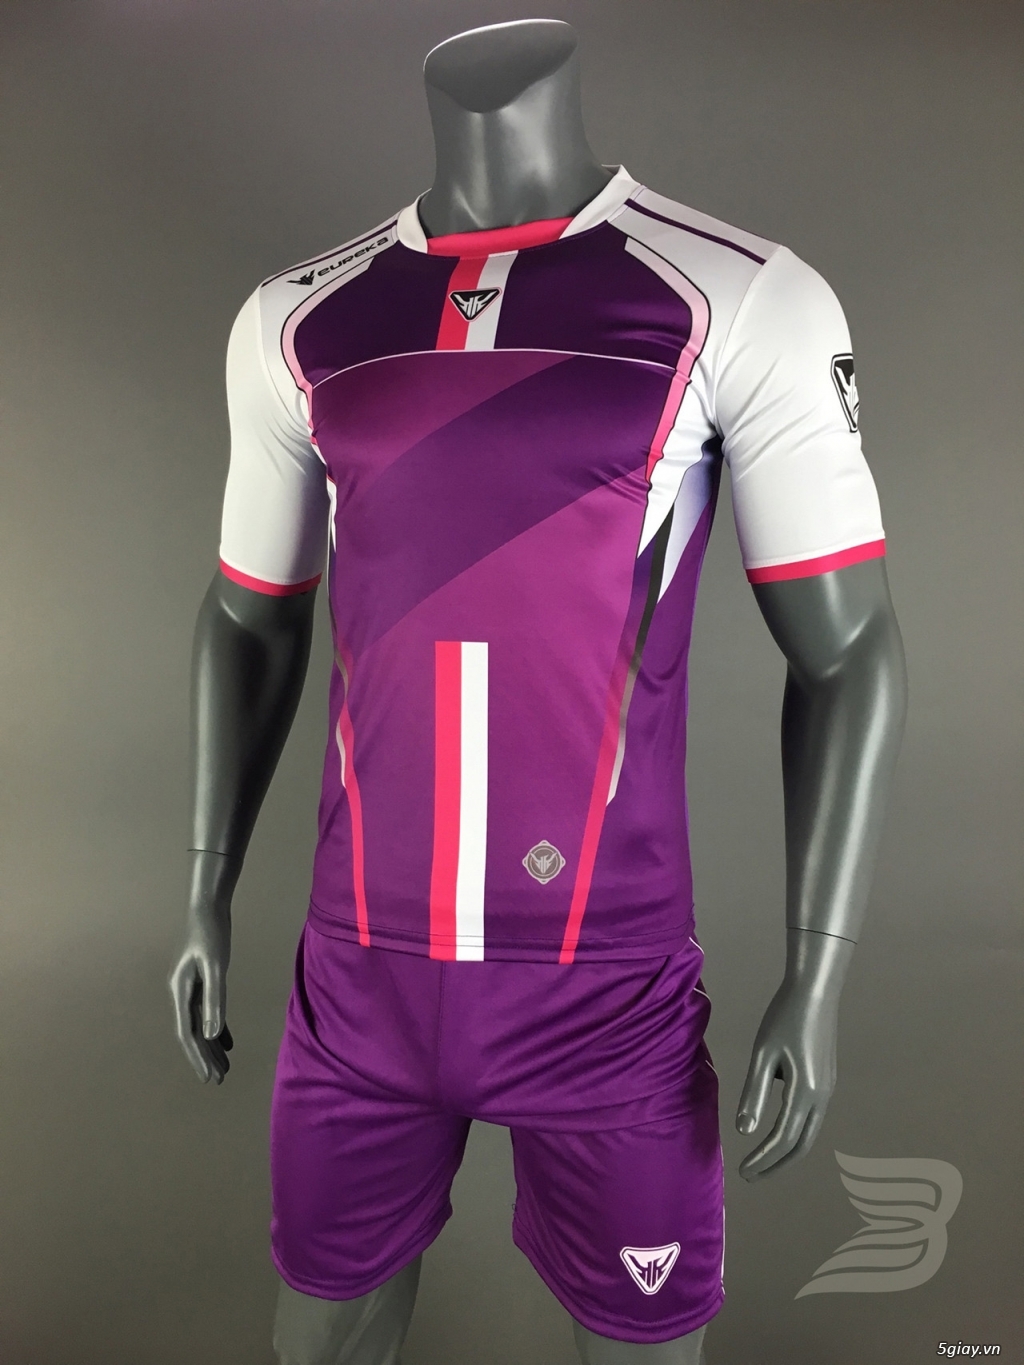 BẢO UYÊN SPORT - Chuyên cung cấp quần áo bóng đá với giá cạnh tranh kèm nhiều ưu đãi - 25